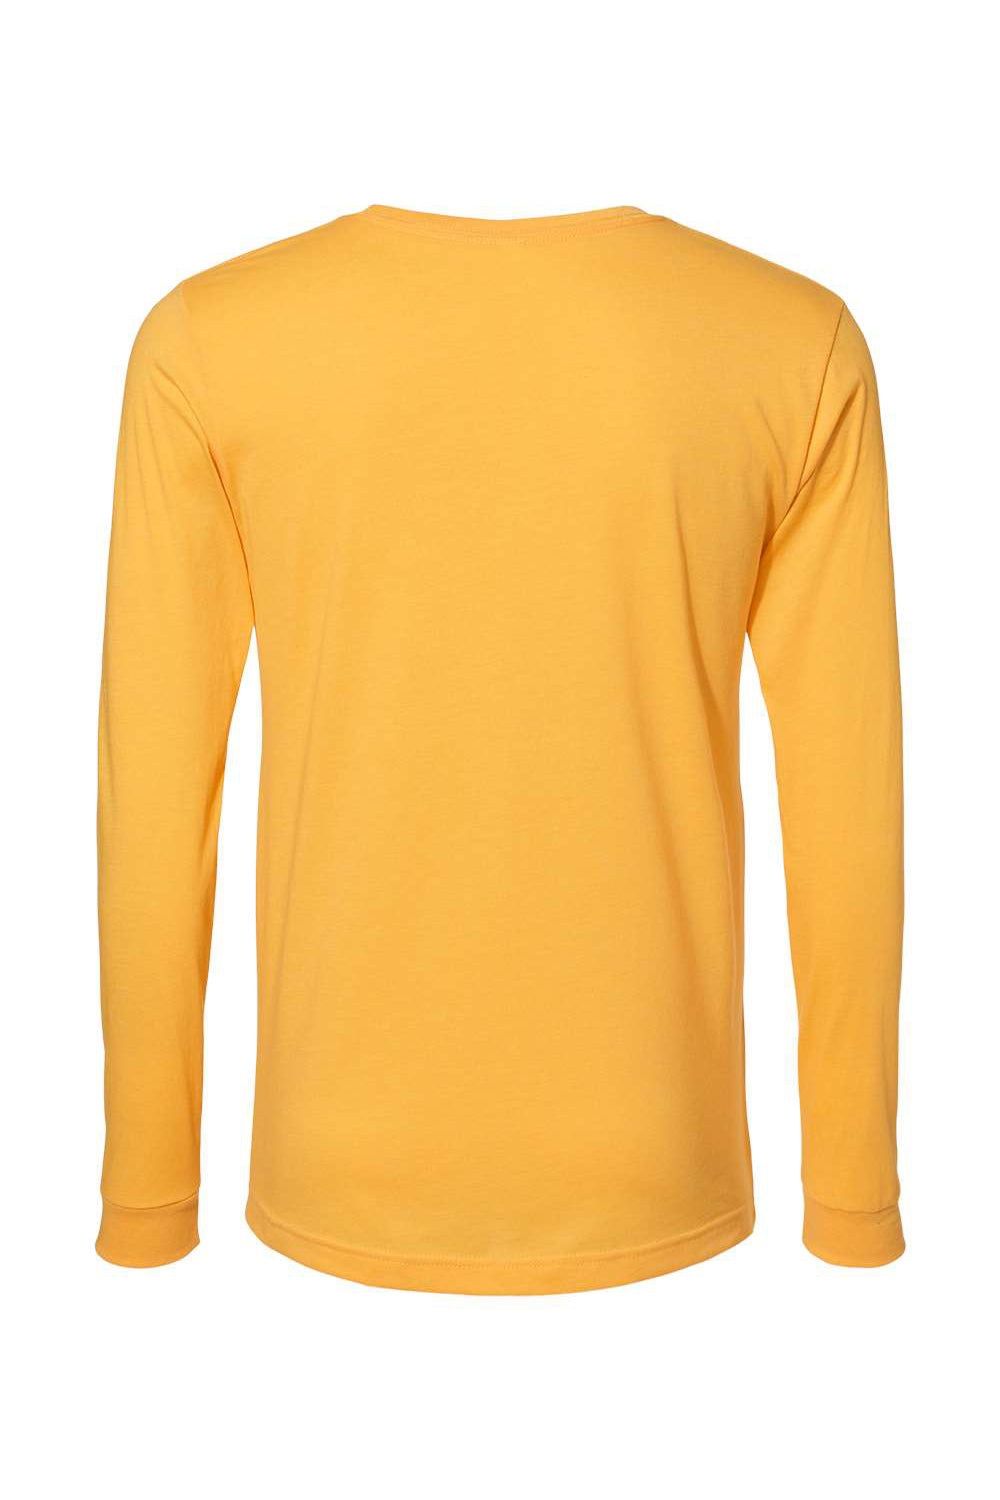 Bella + Canvas BC3501CVC Mens CVC Long Sleeve Crewneck T-Shirt Heather Yellow Gold Flat Back